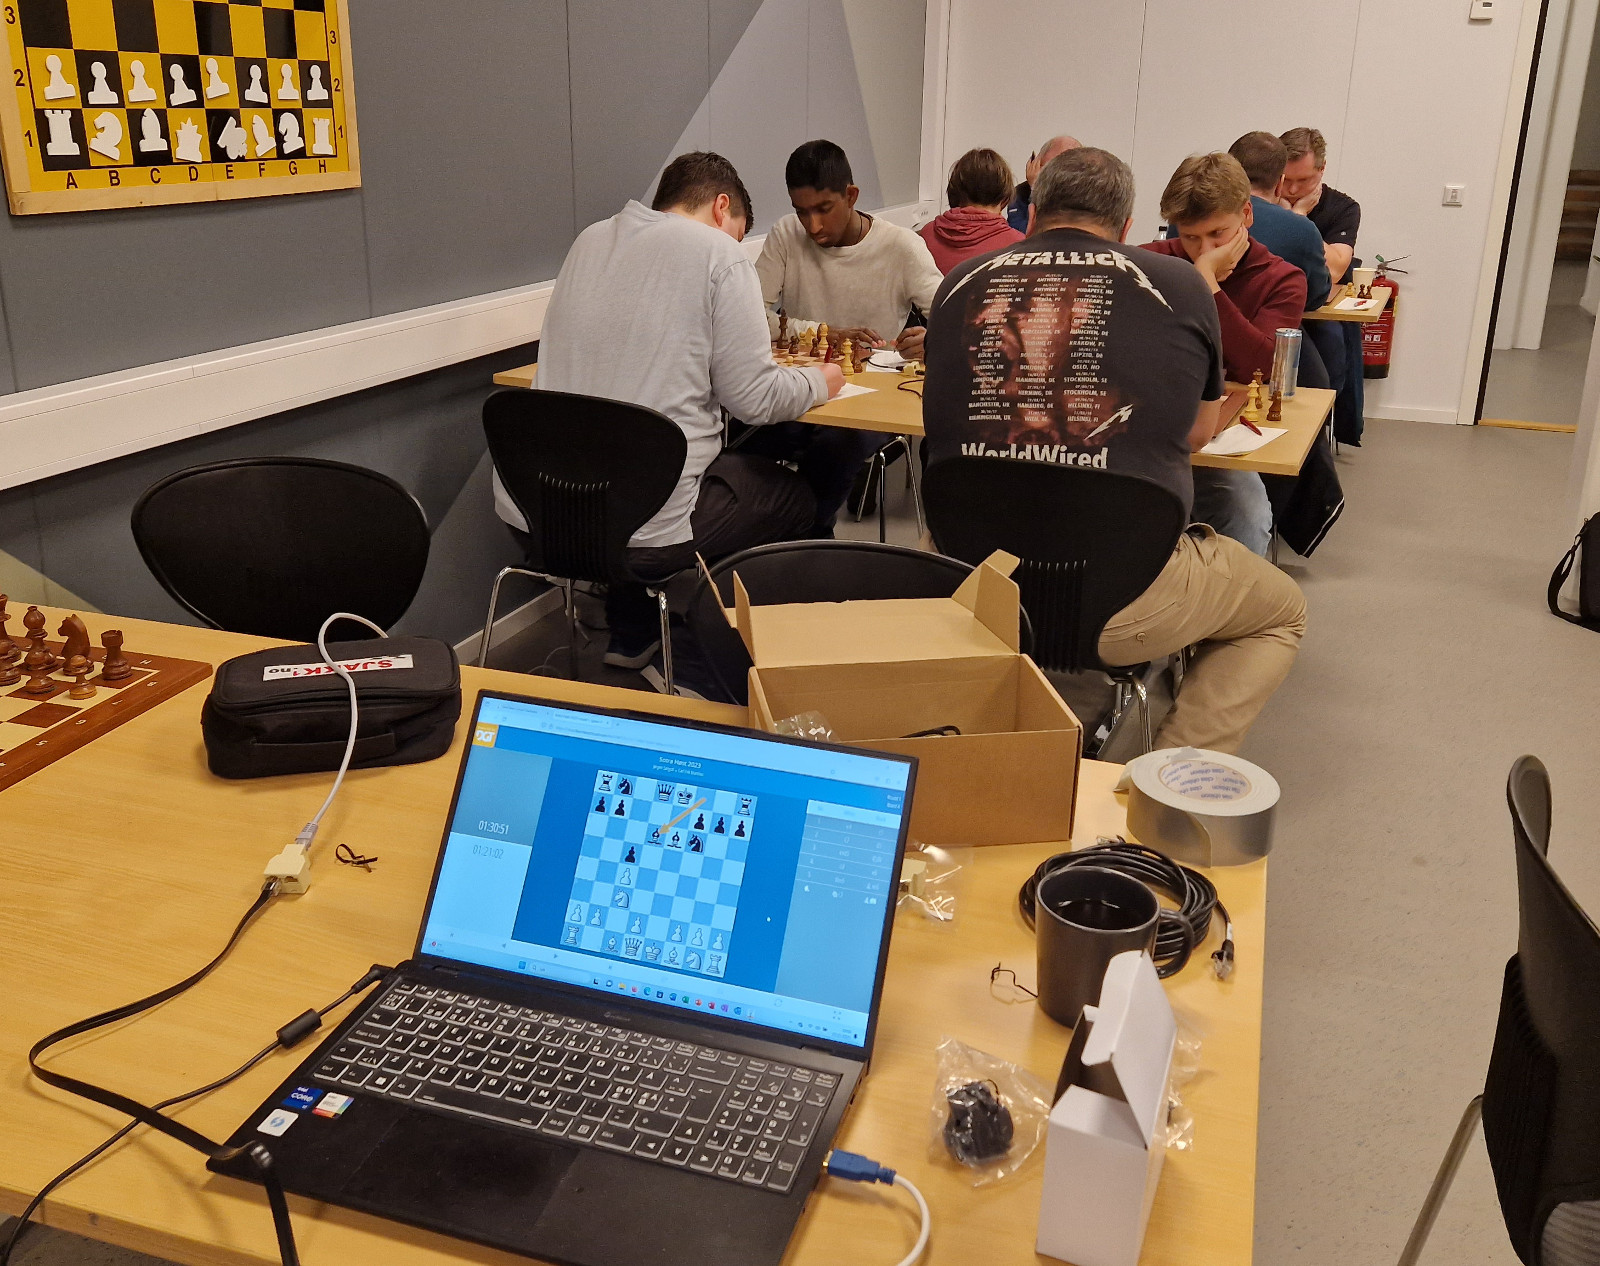 Kveldens runde i Høstturneringen ble kombinert med uttesting av klubbens nye elektroniske sjakksett. Foto: Tom Eriksen